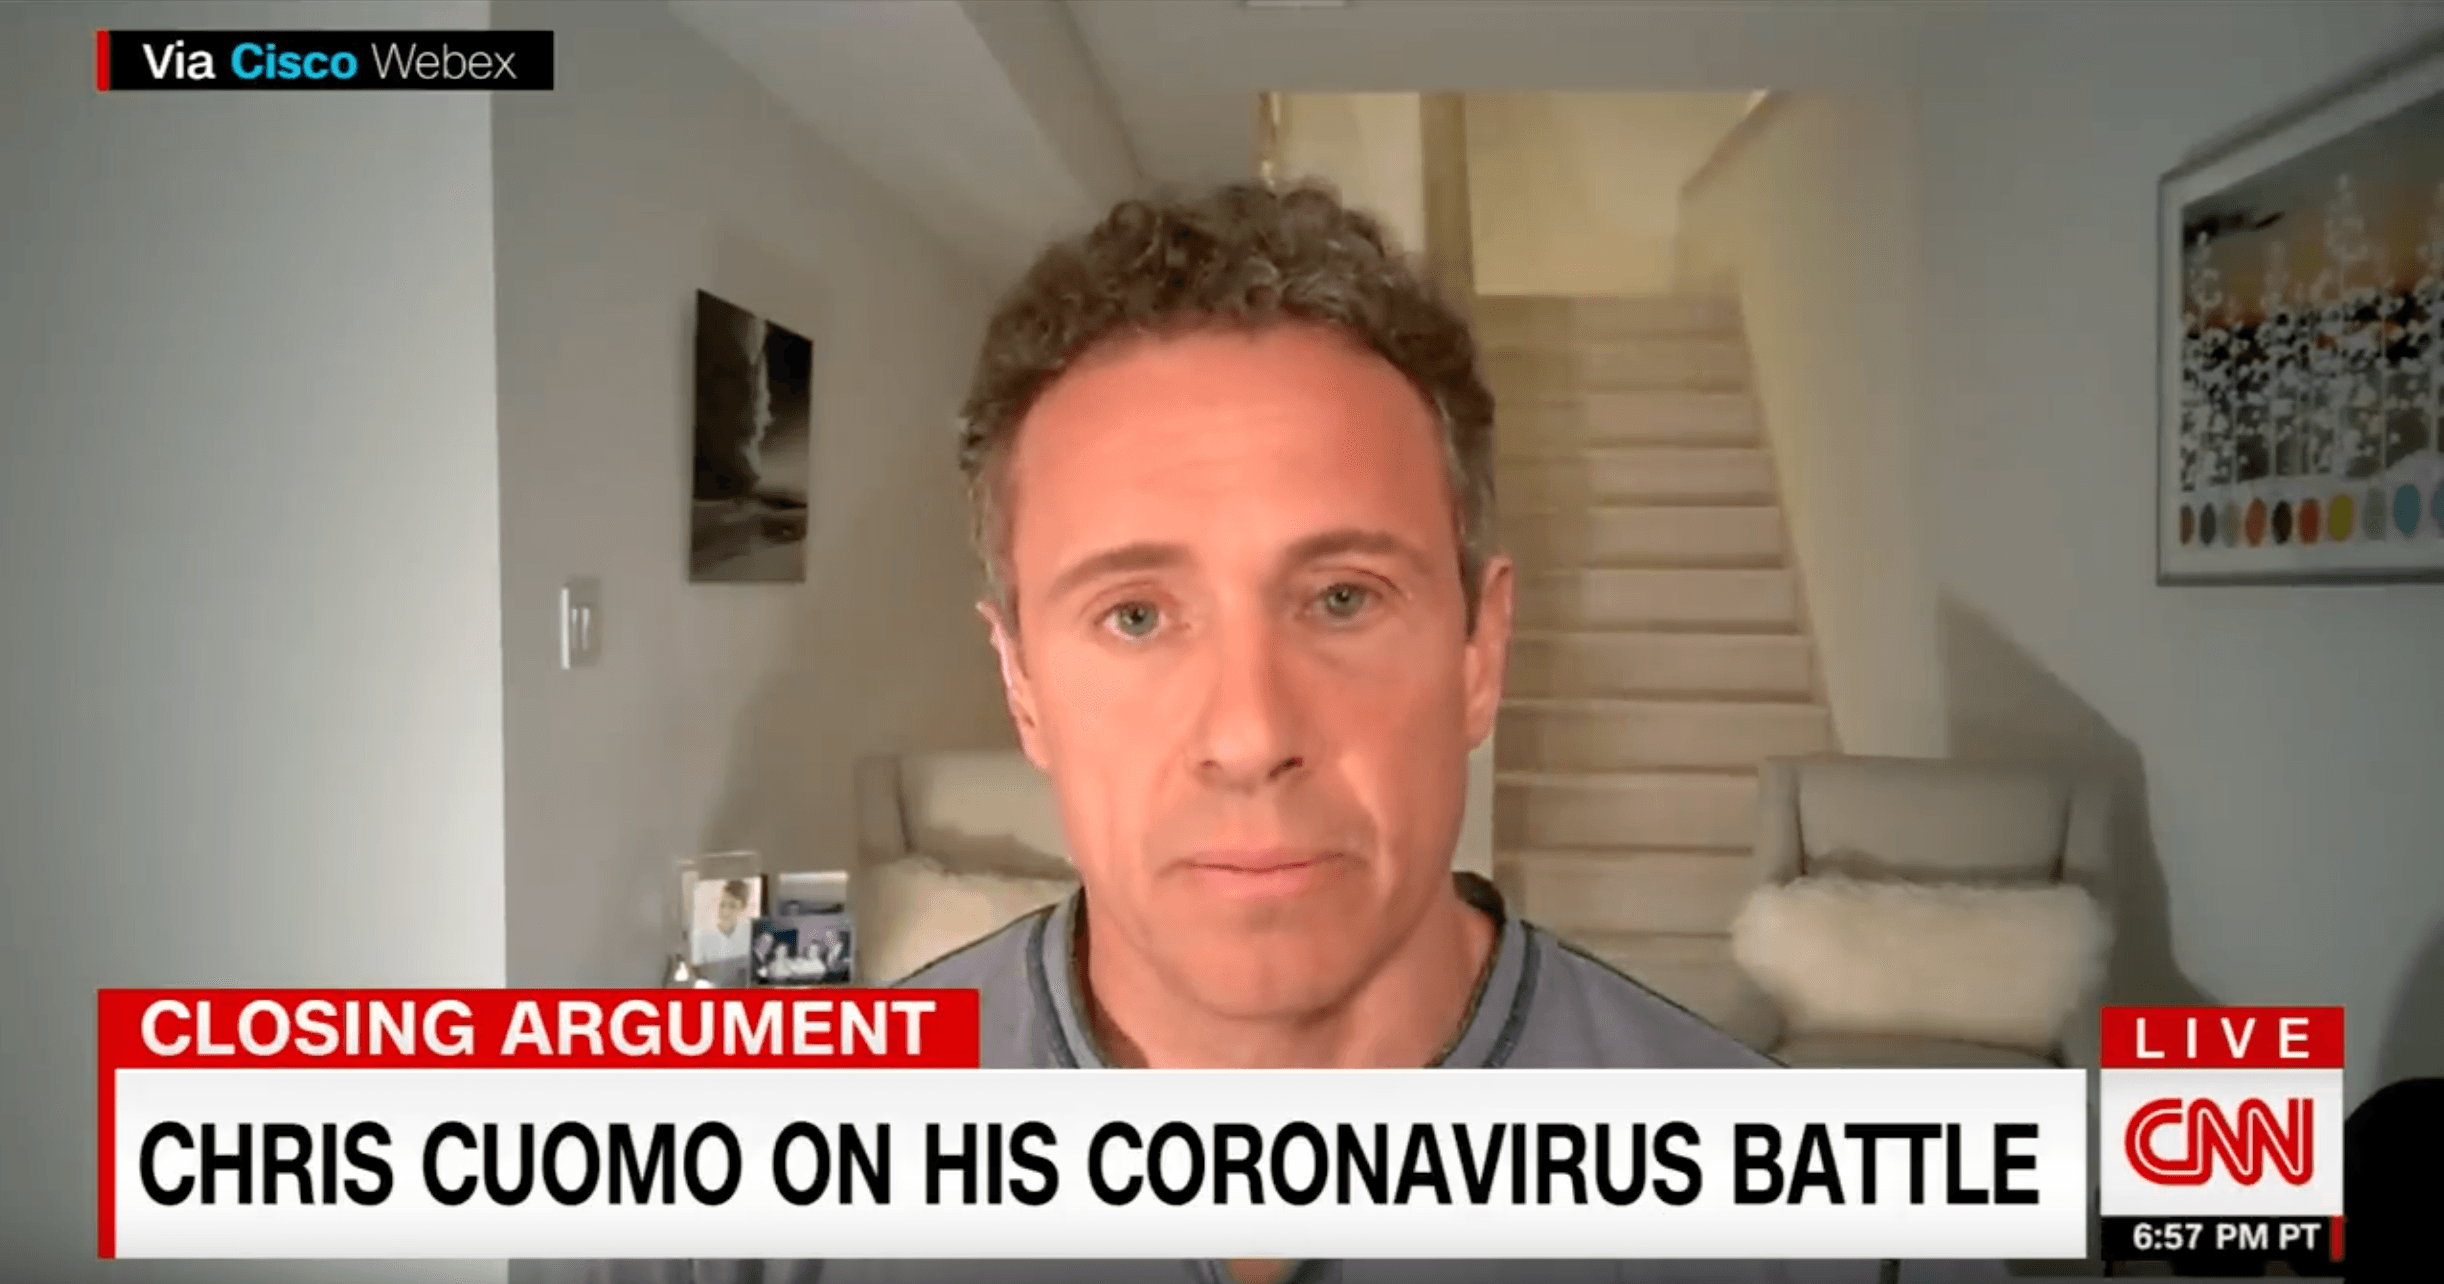 Tägliches Corona-Update aus dem heimatlichen Keller: CNN-Moderator Chris Cuomo   